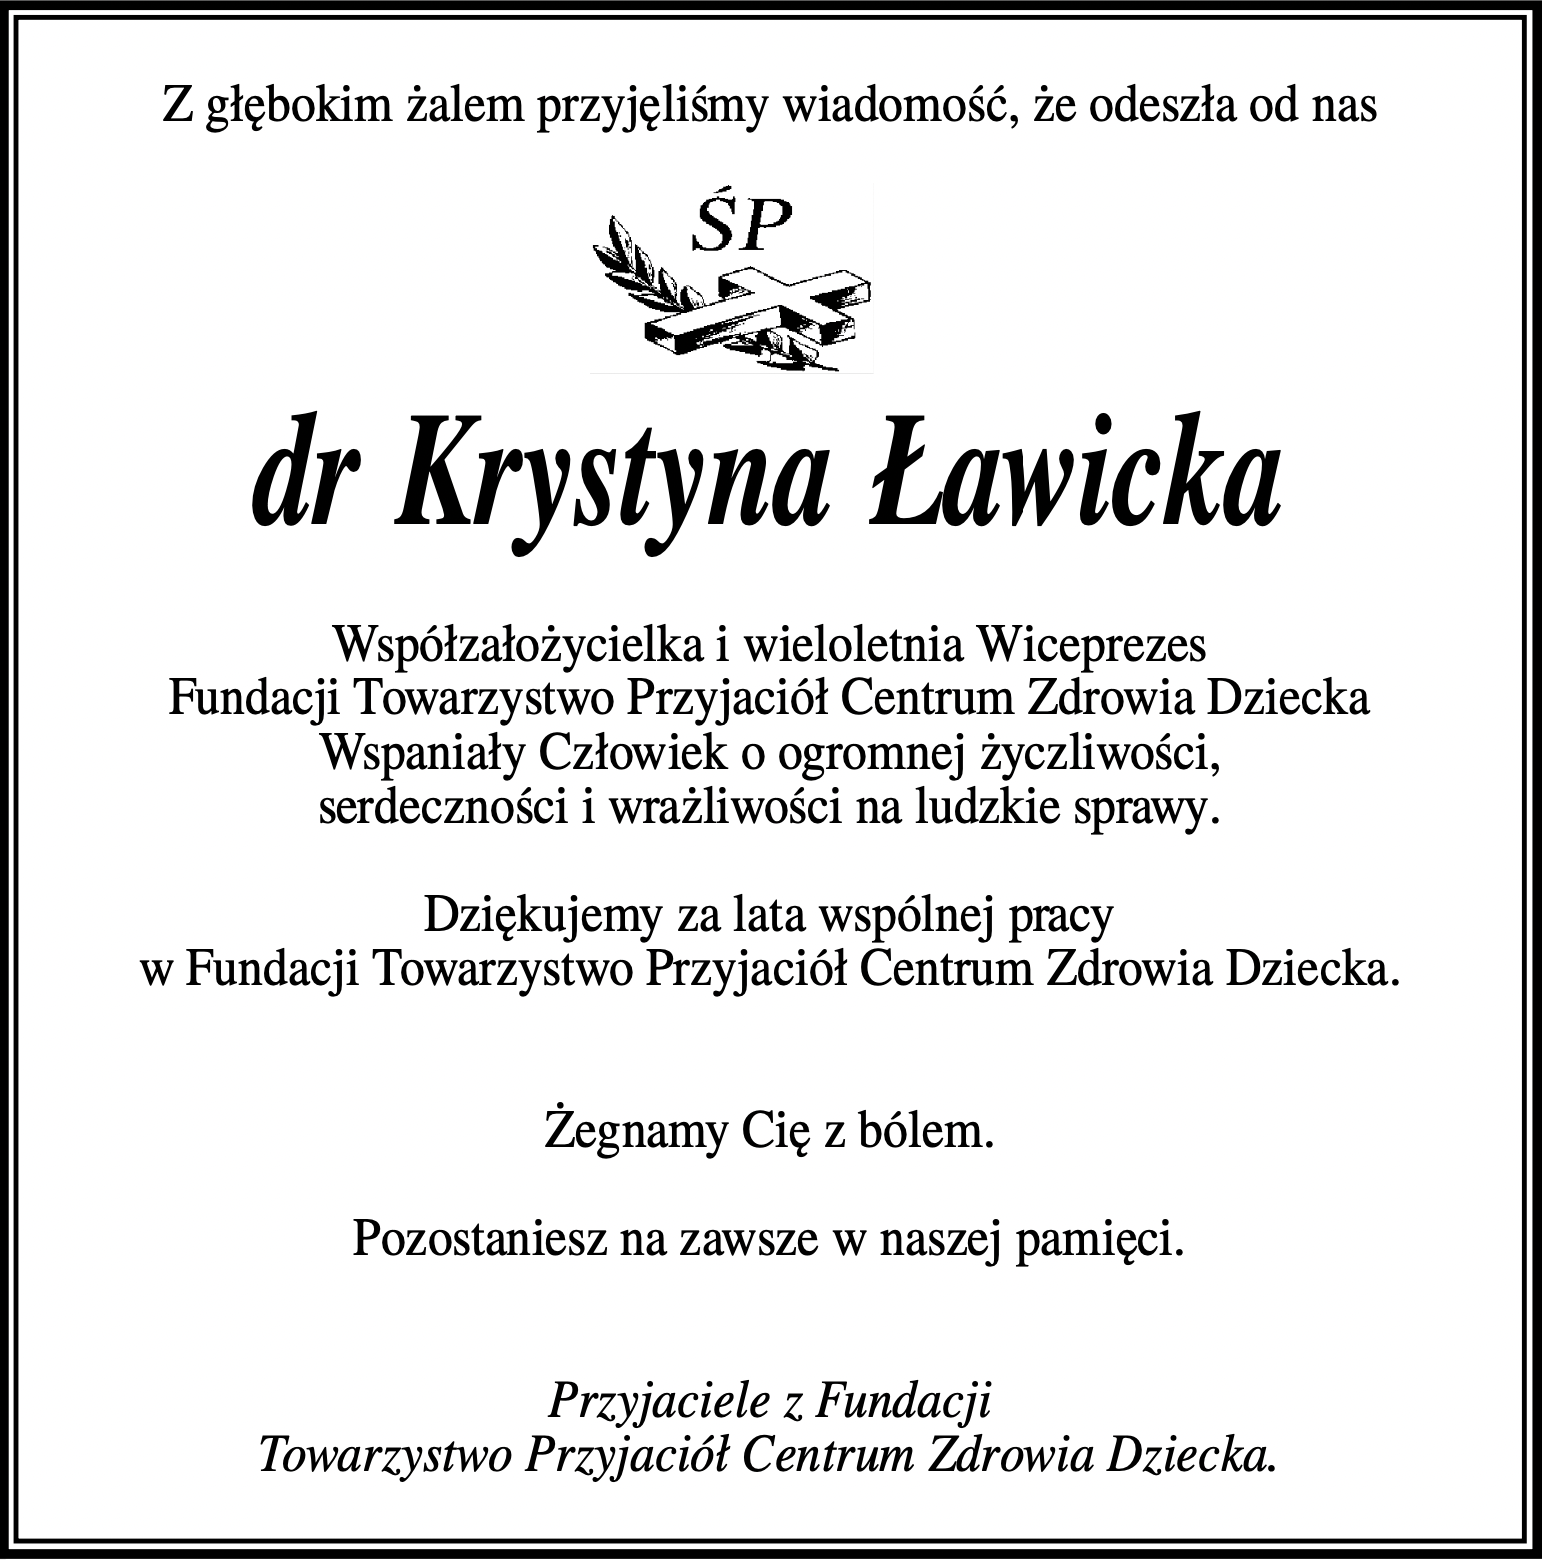 dr Krystyna Ławicka